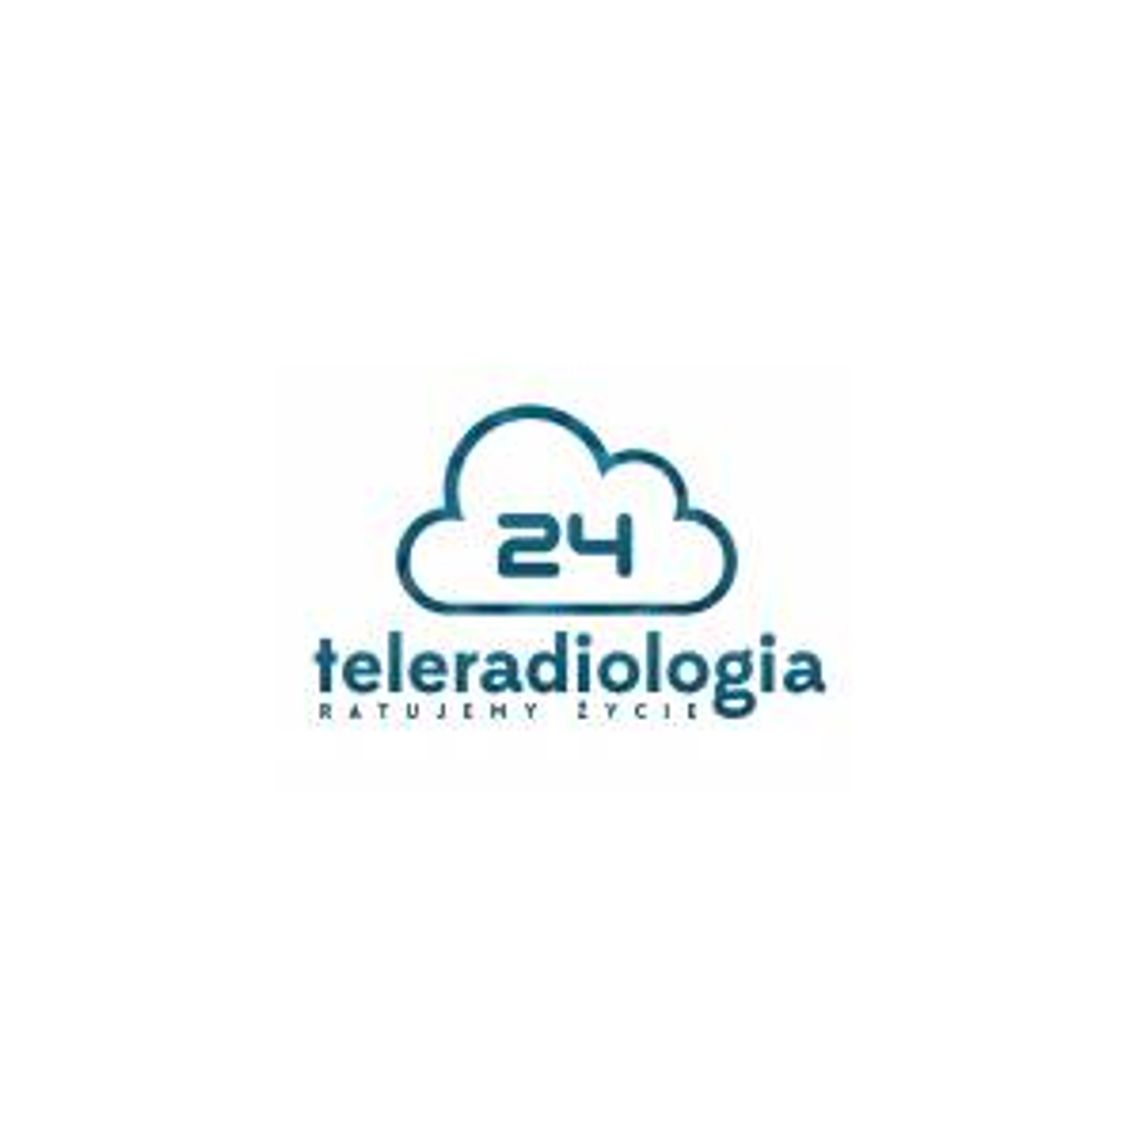 Opis badania RTG - Teleradiogia24